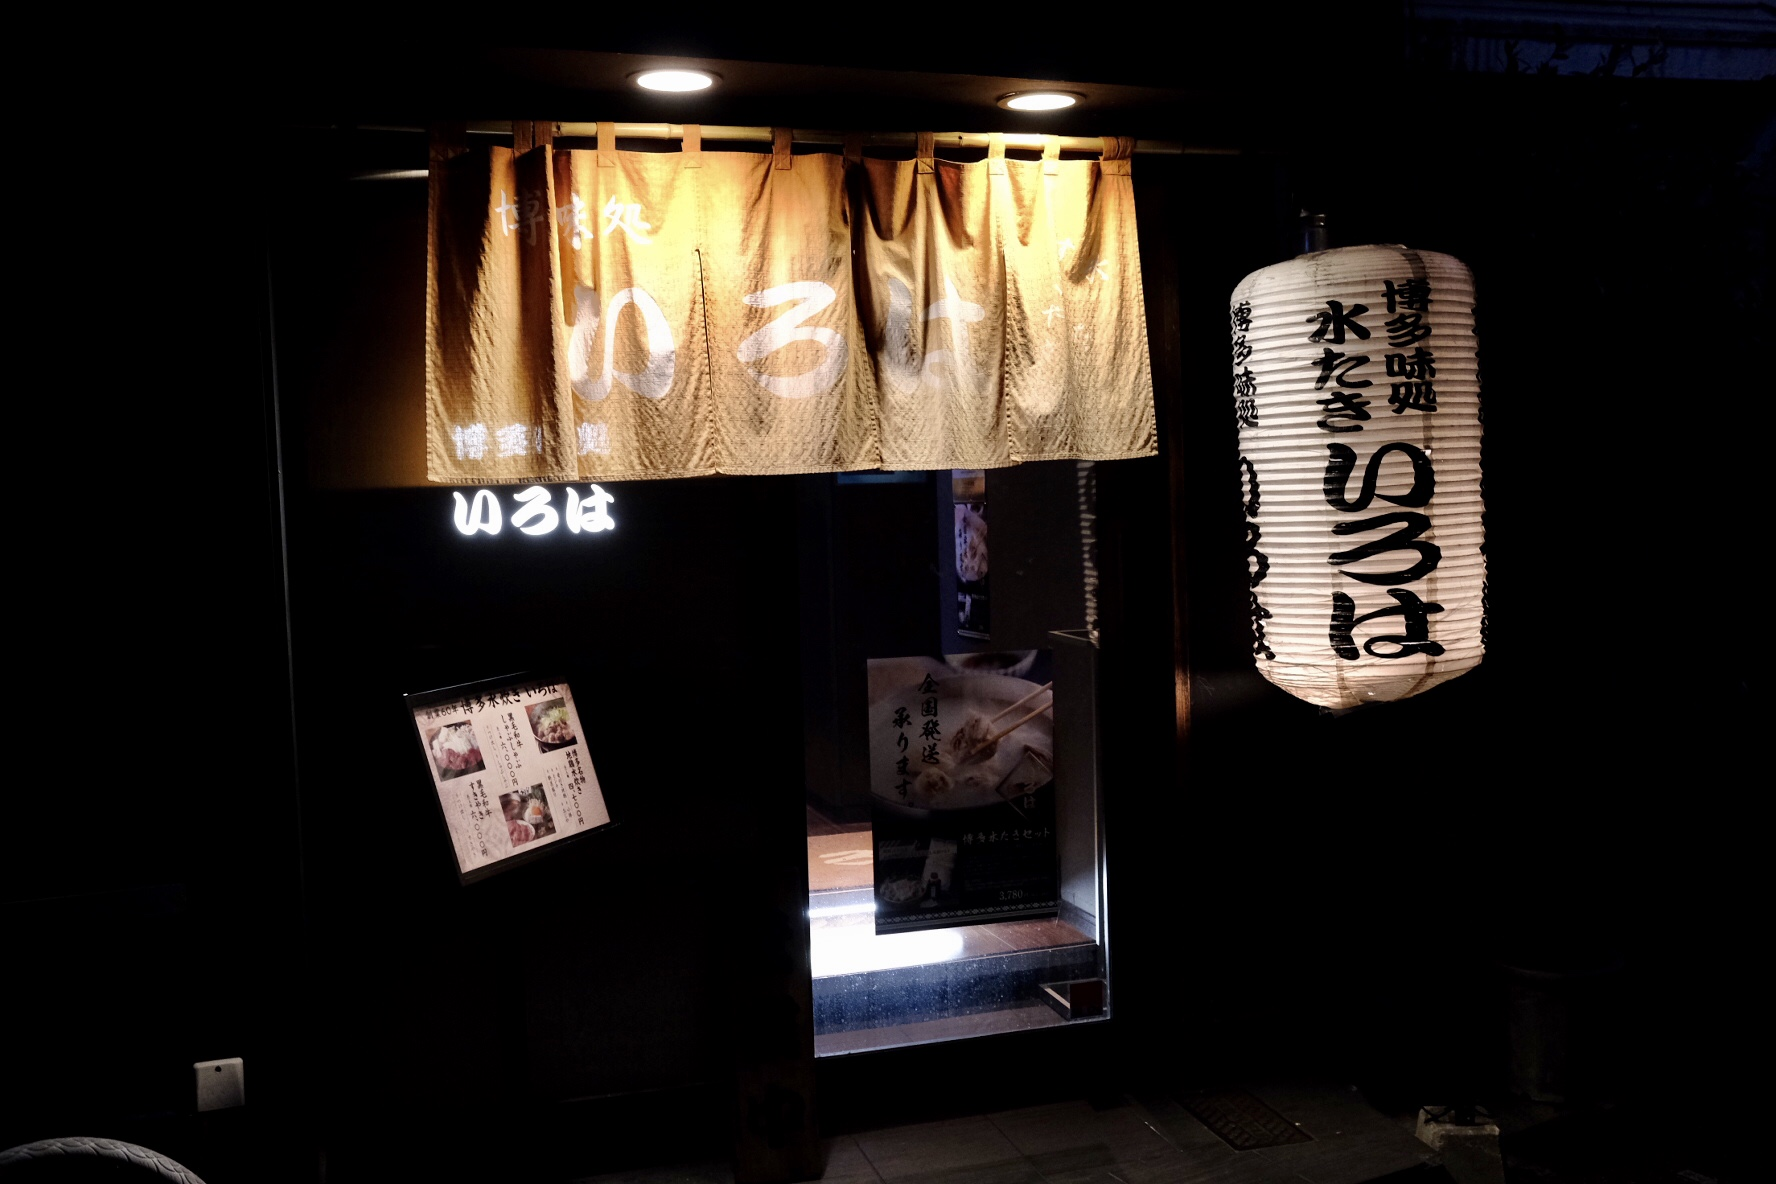 冬天没有什么比一锅鸡汤更暖的了！大阪这家专做鸡汤的料理店治愈你的冬天